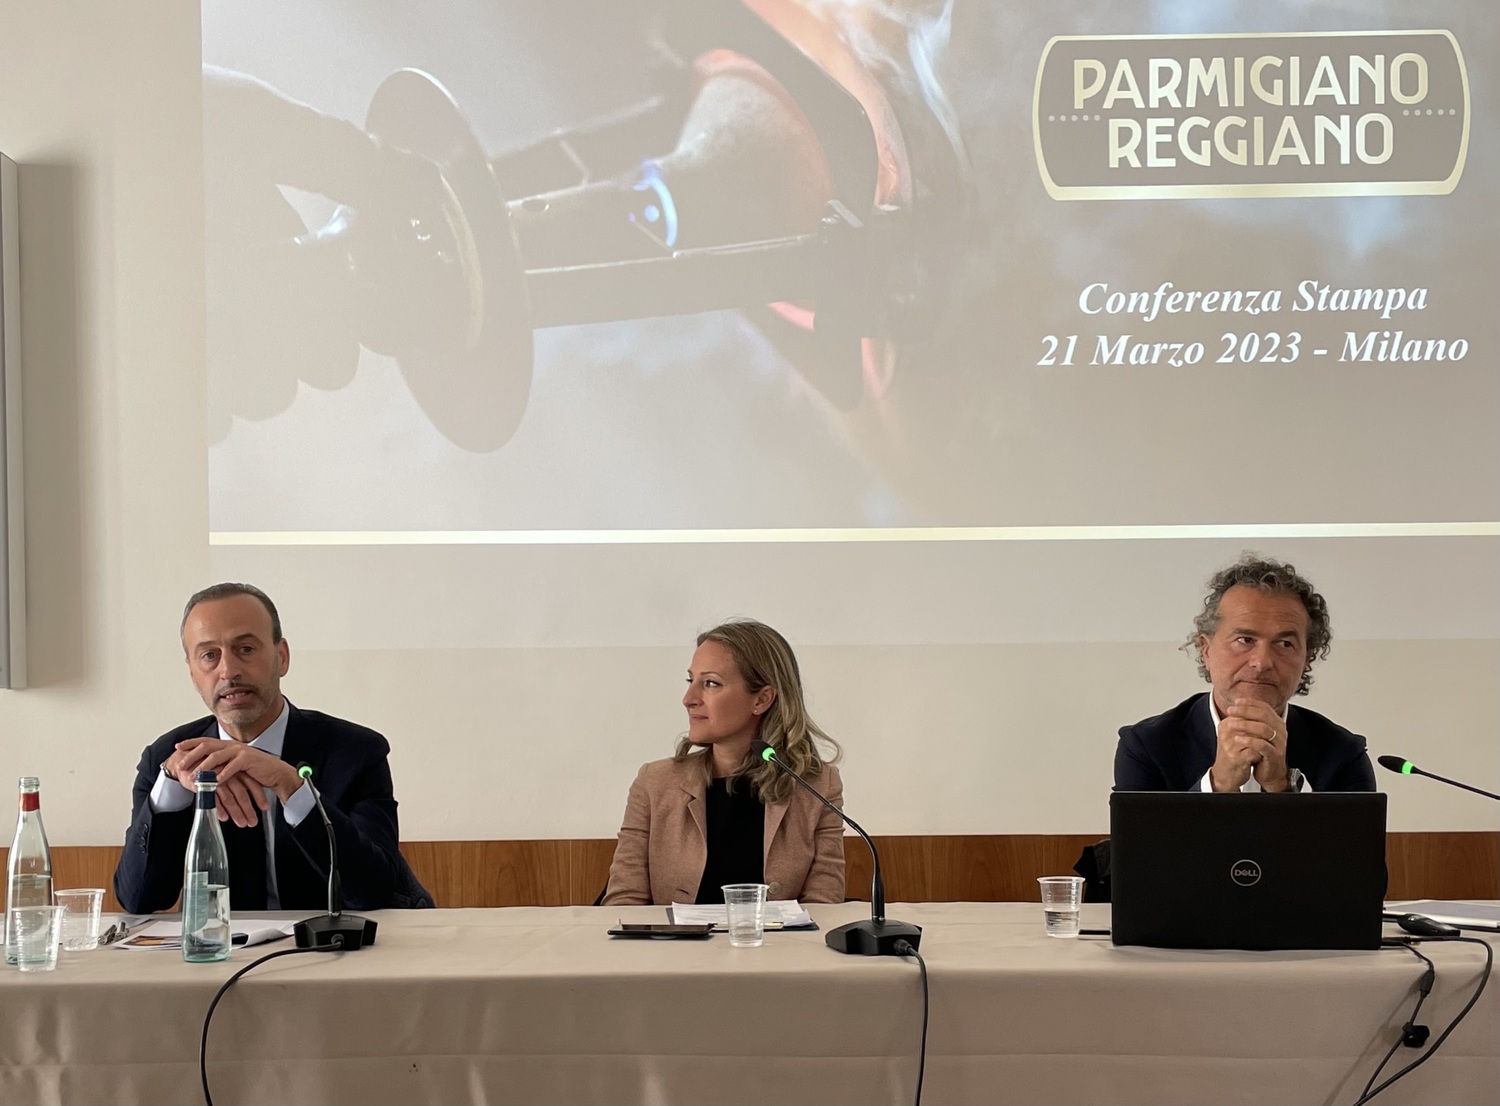 La corsa del Parmigiano reggiano: vendite +15,1% nel primo bimestre 2023